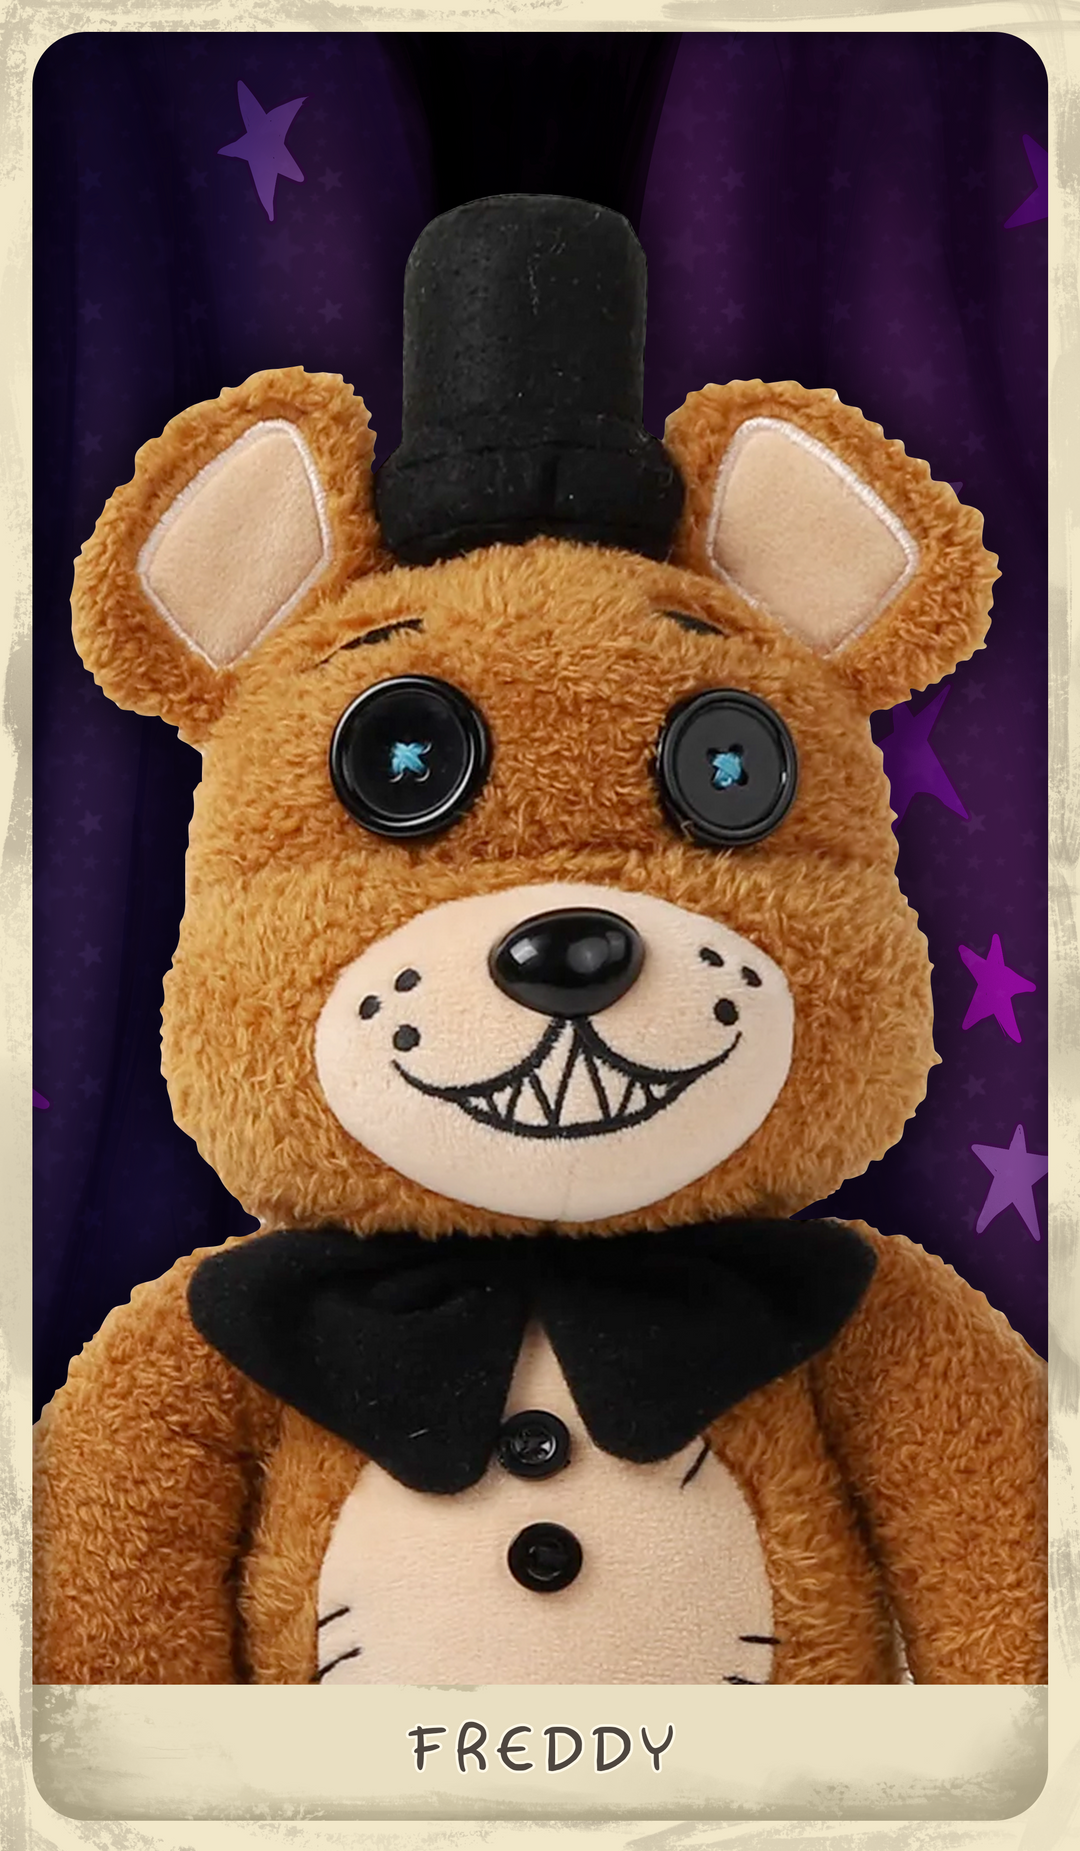 Five Nights At Freddys Plush Freddy 8' Stuffed Toy Animal Plush Good Stuff  FNAF